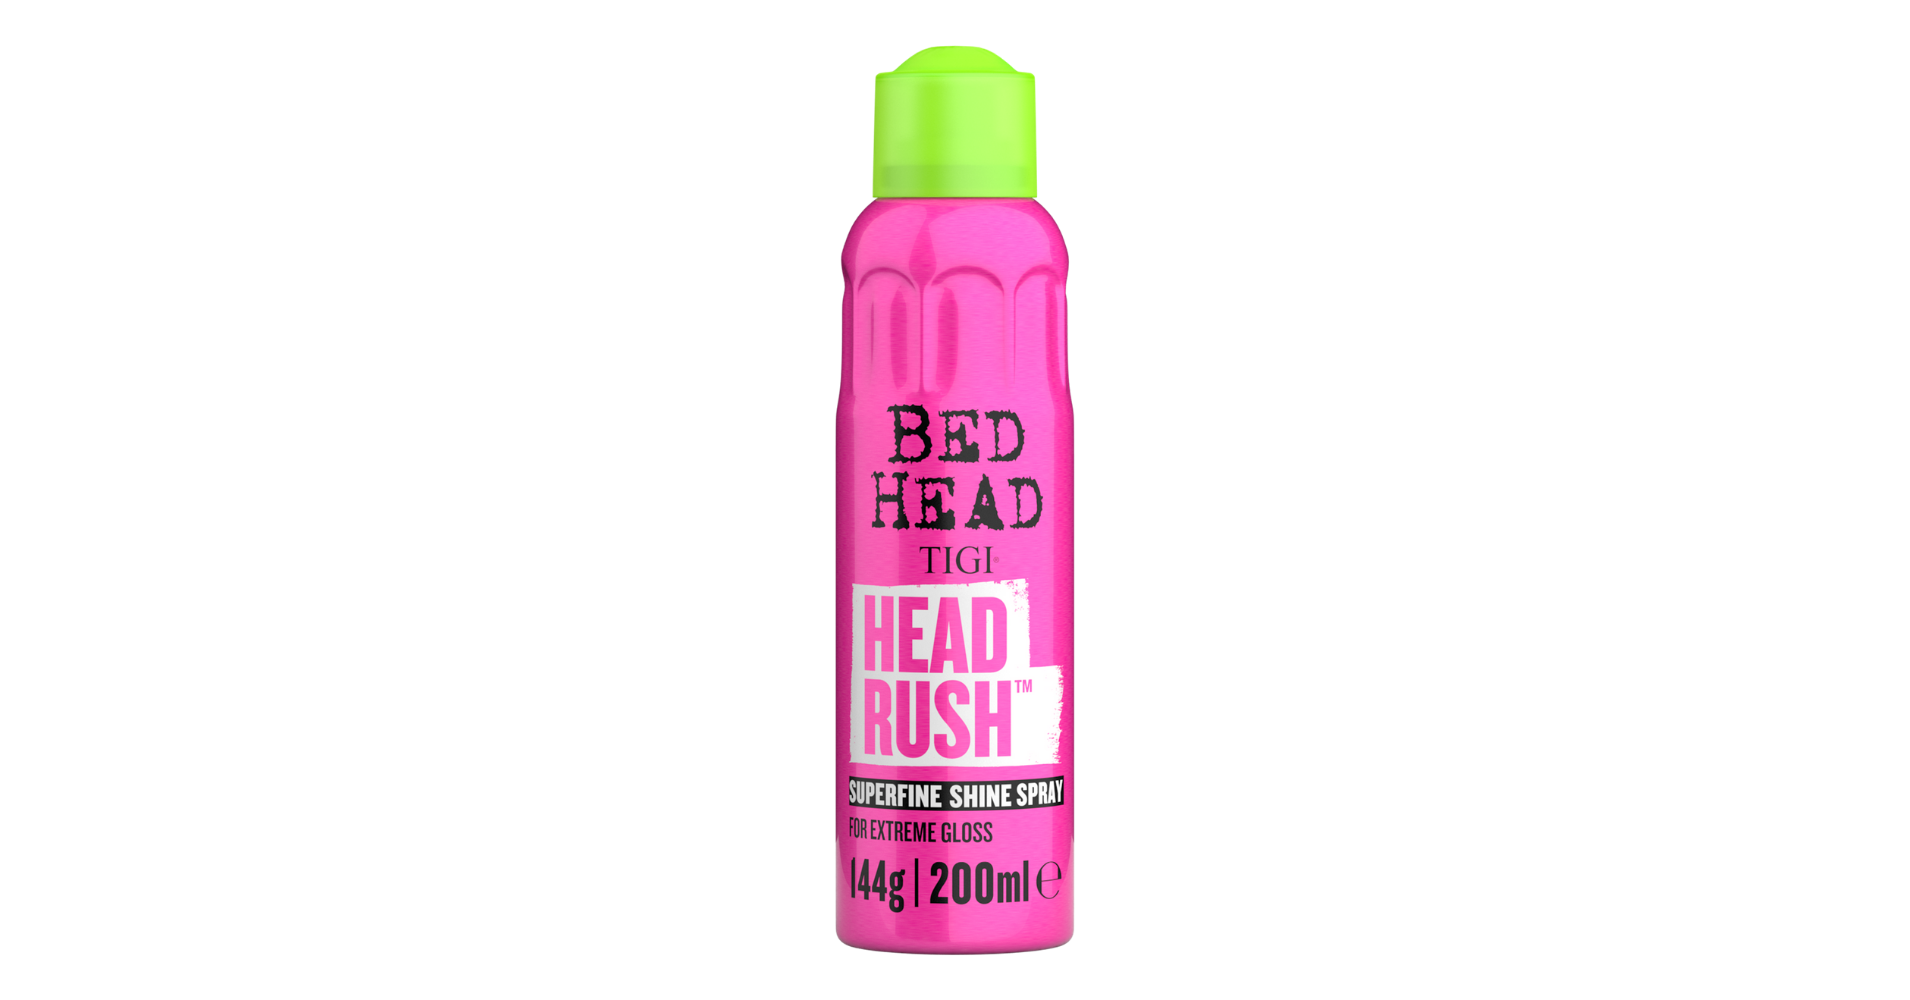 Bed Head by TIGI Headrush Shine Adrenaline with Superfine Mist - wide 7